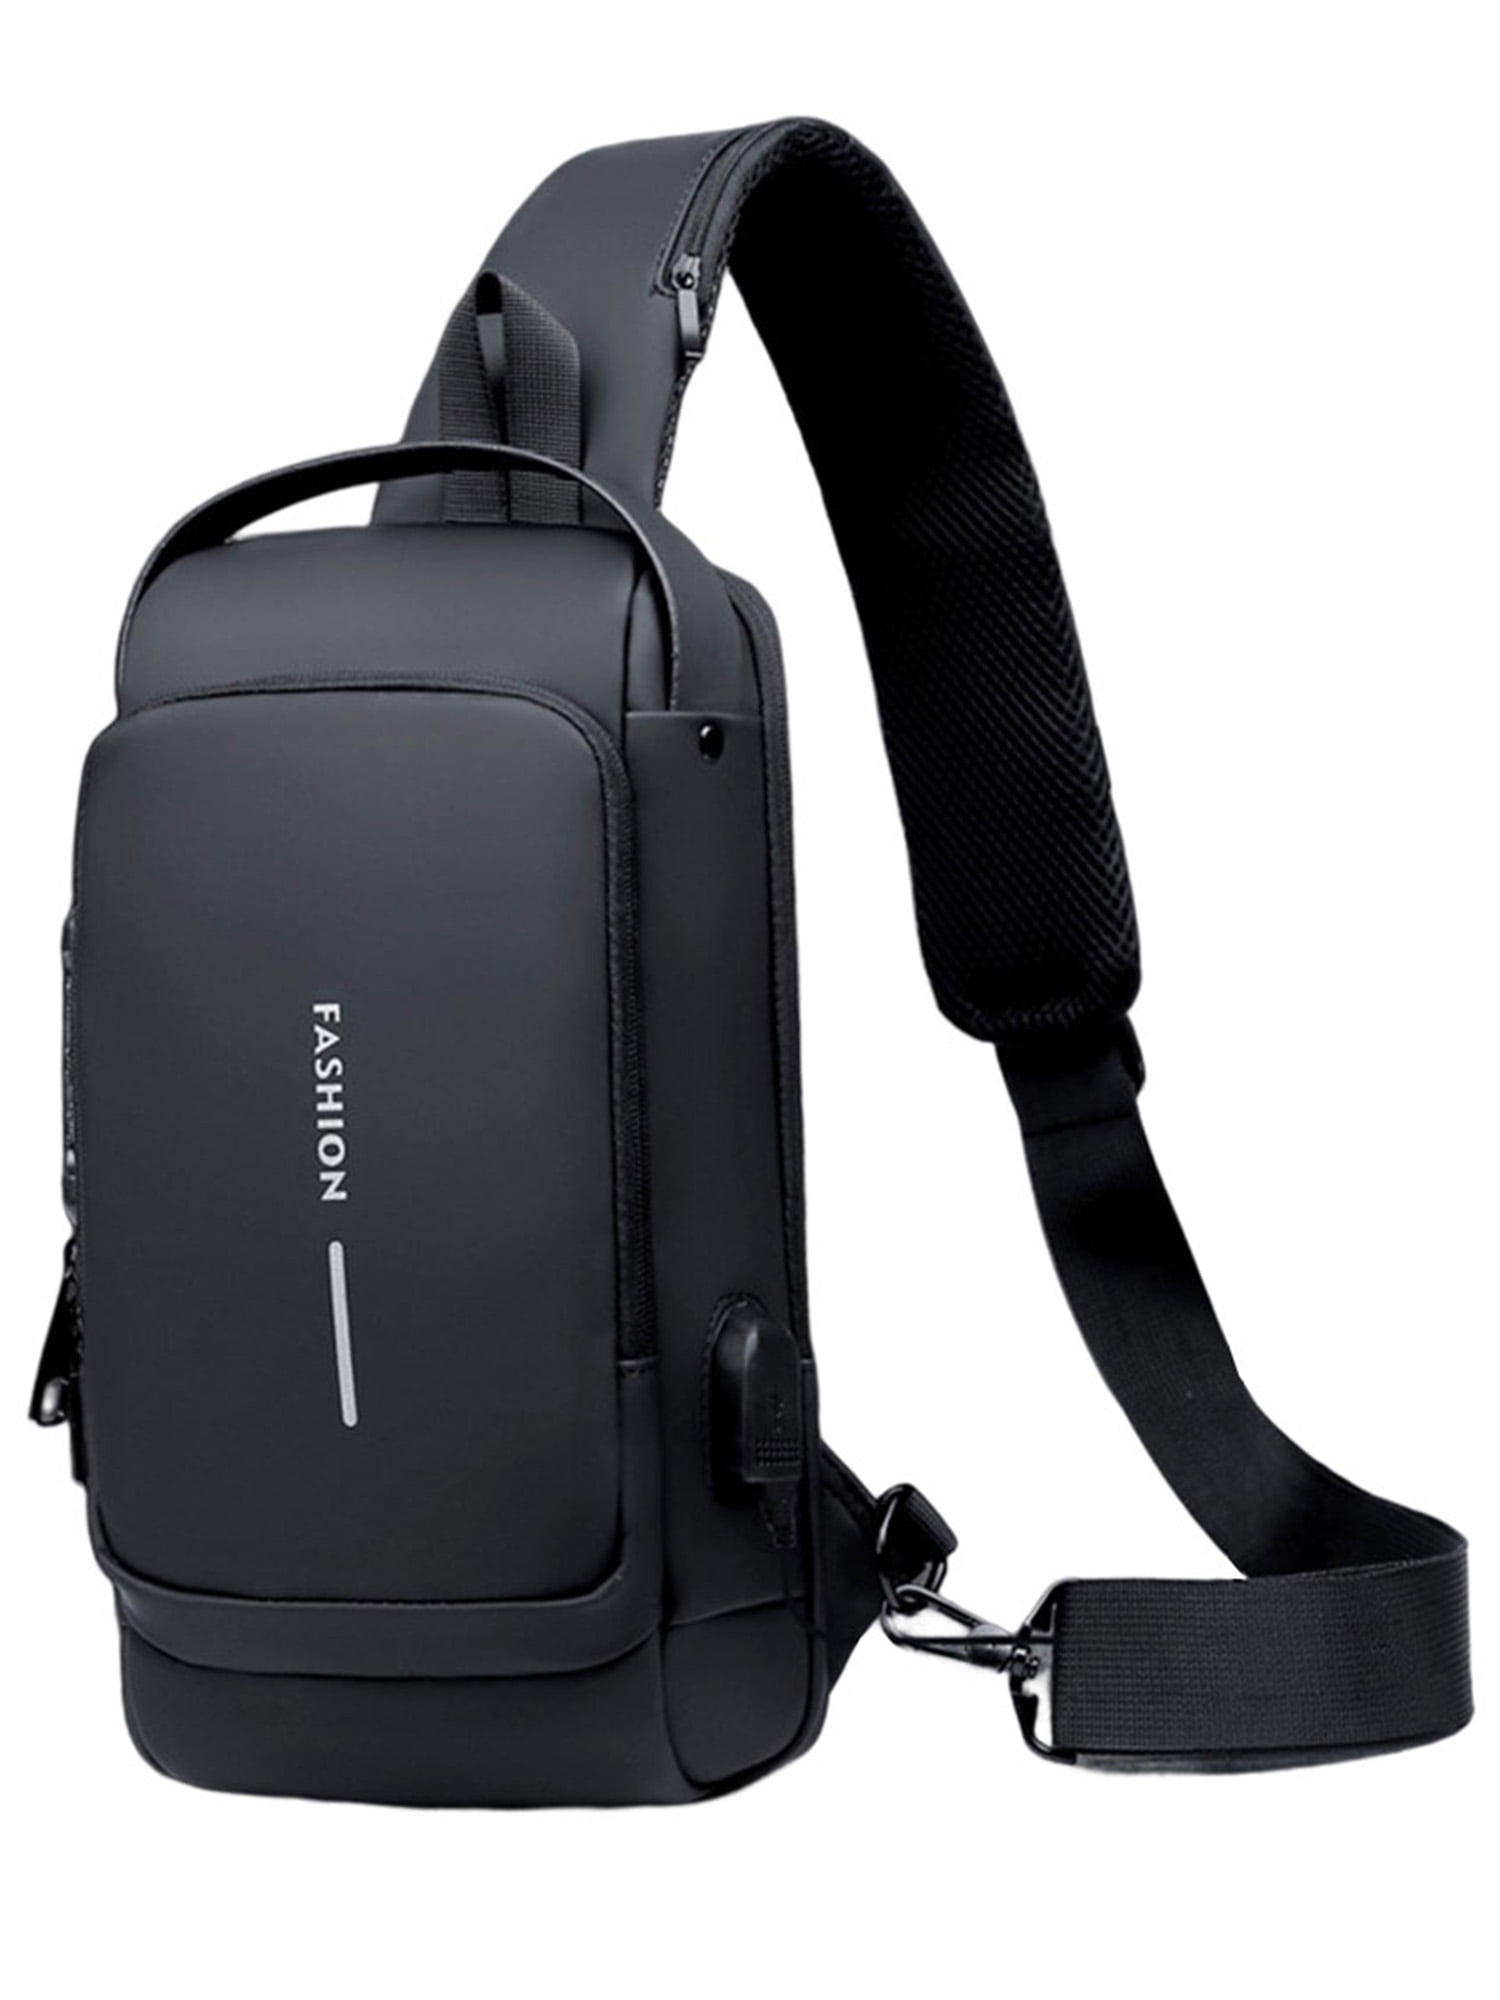 Grianlook Boys Crossbody Bags Messenger Shoulder Bag Adjustable